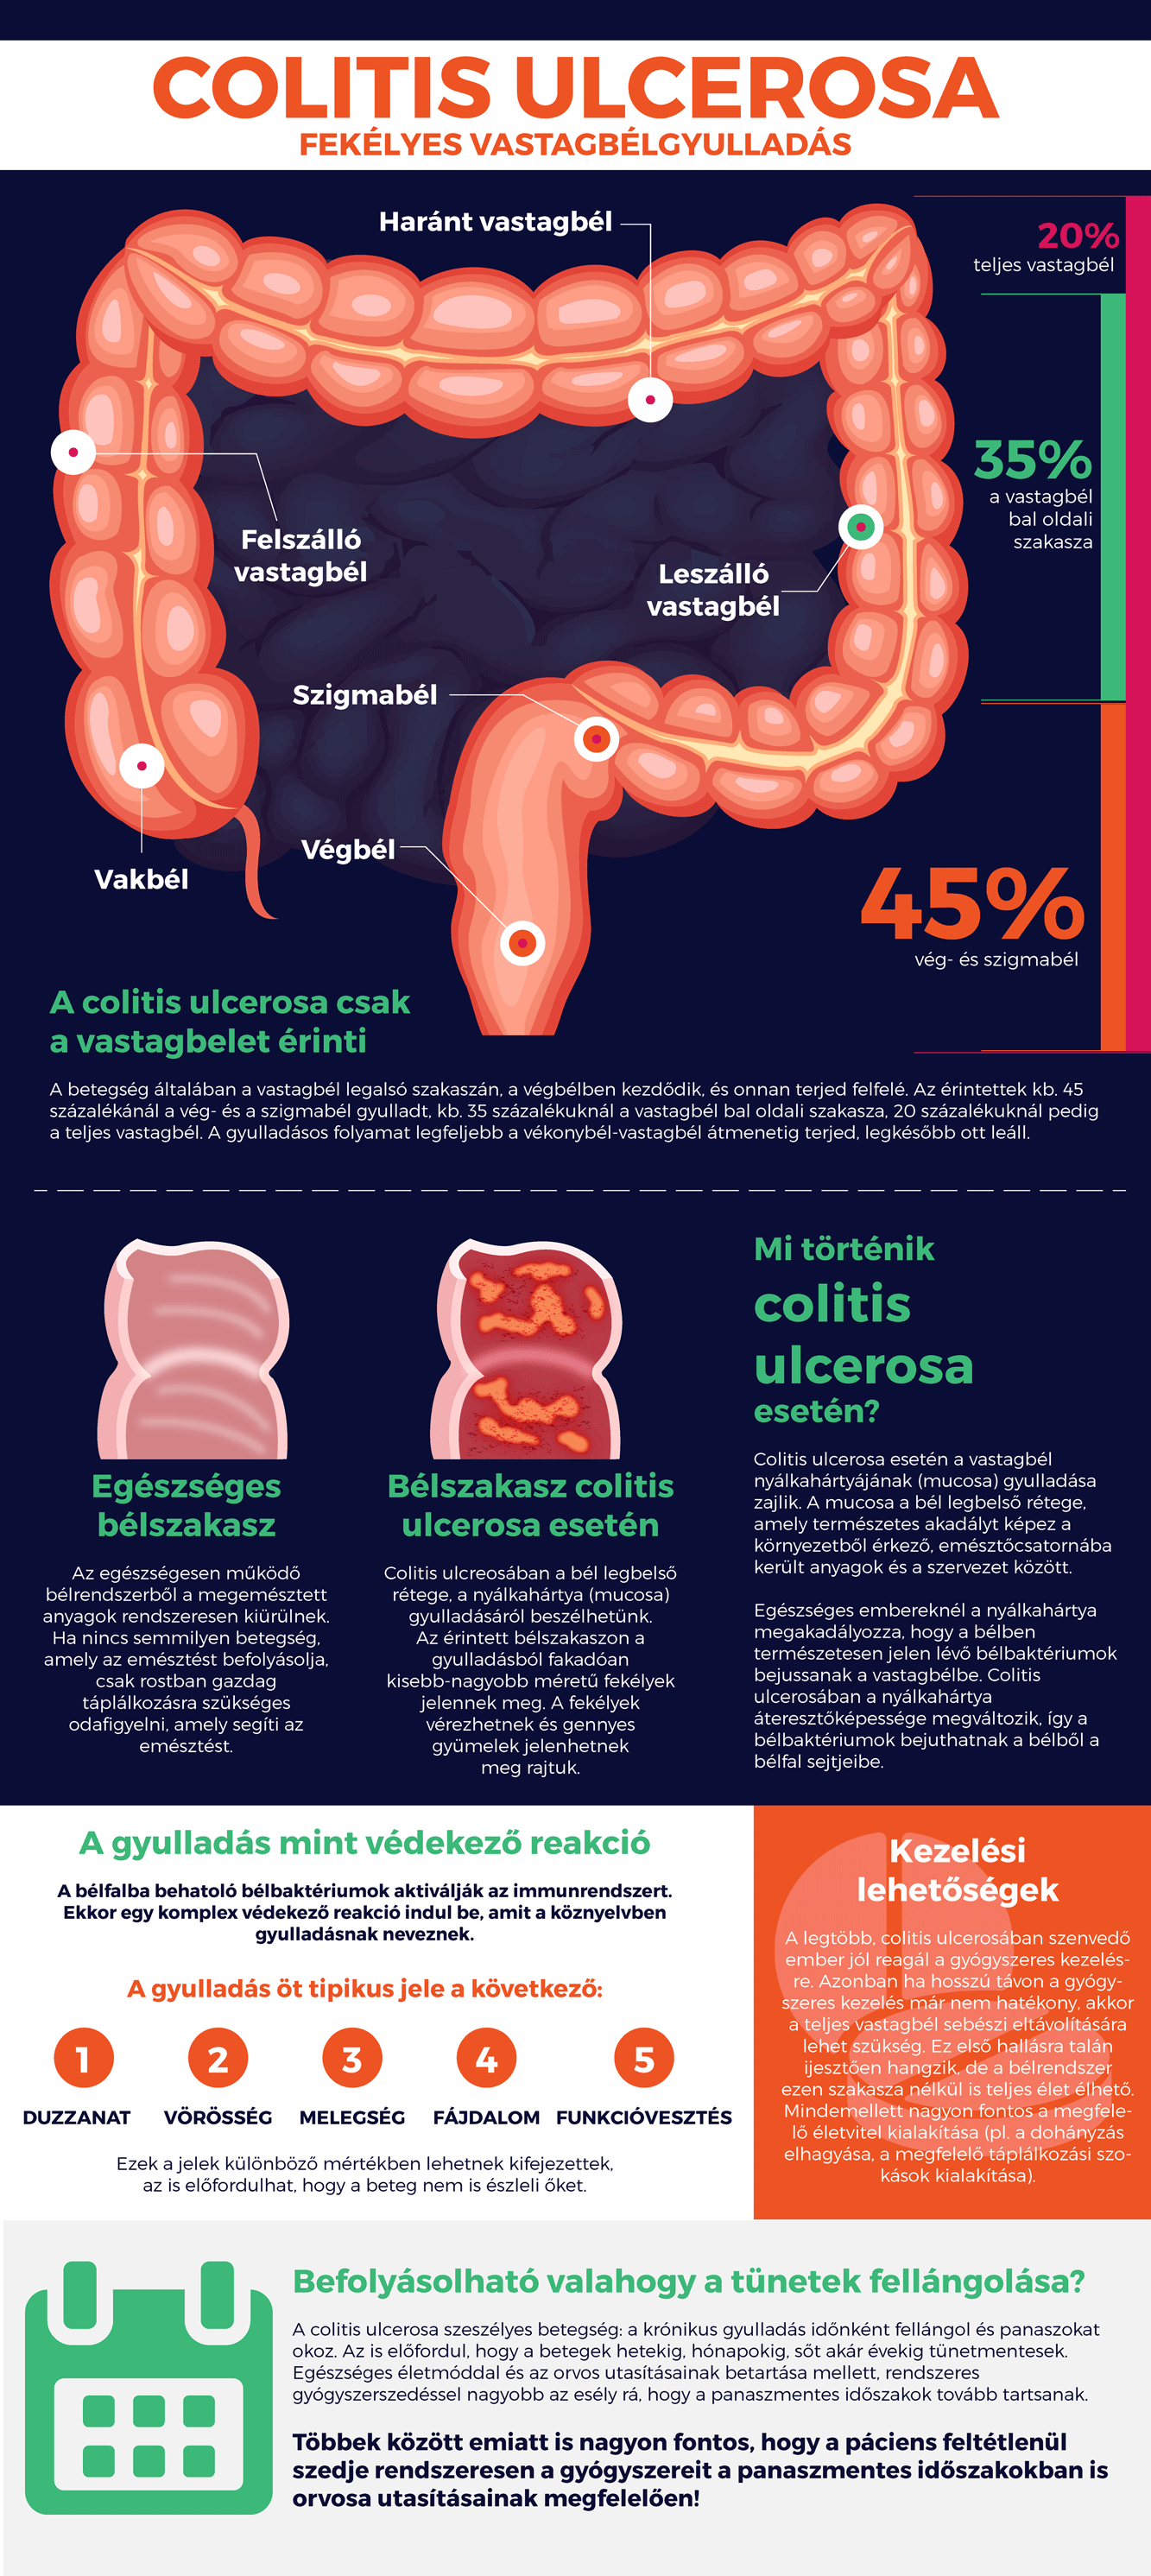 Gyulladásos bélbetegségek: a Crohn-betegség és a colitis ulcerosa